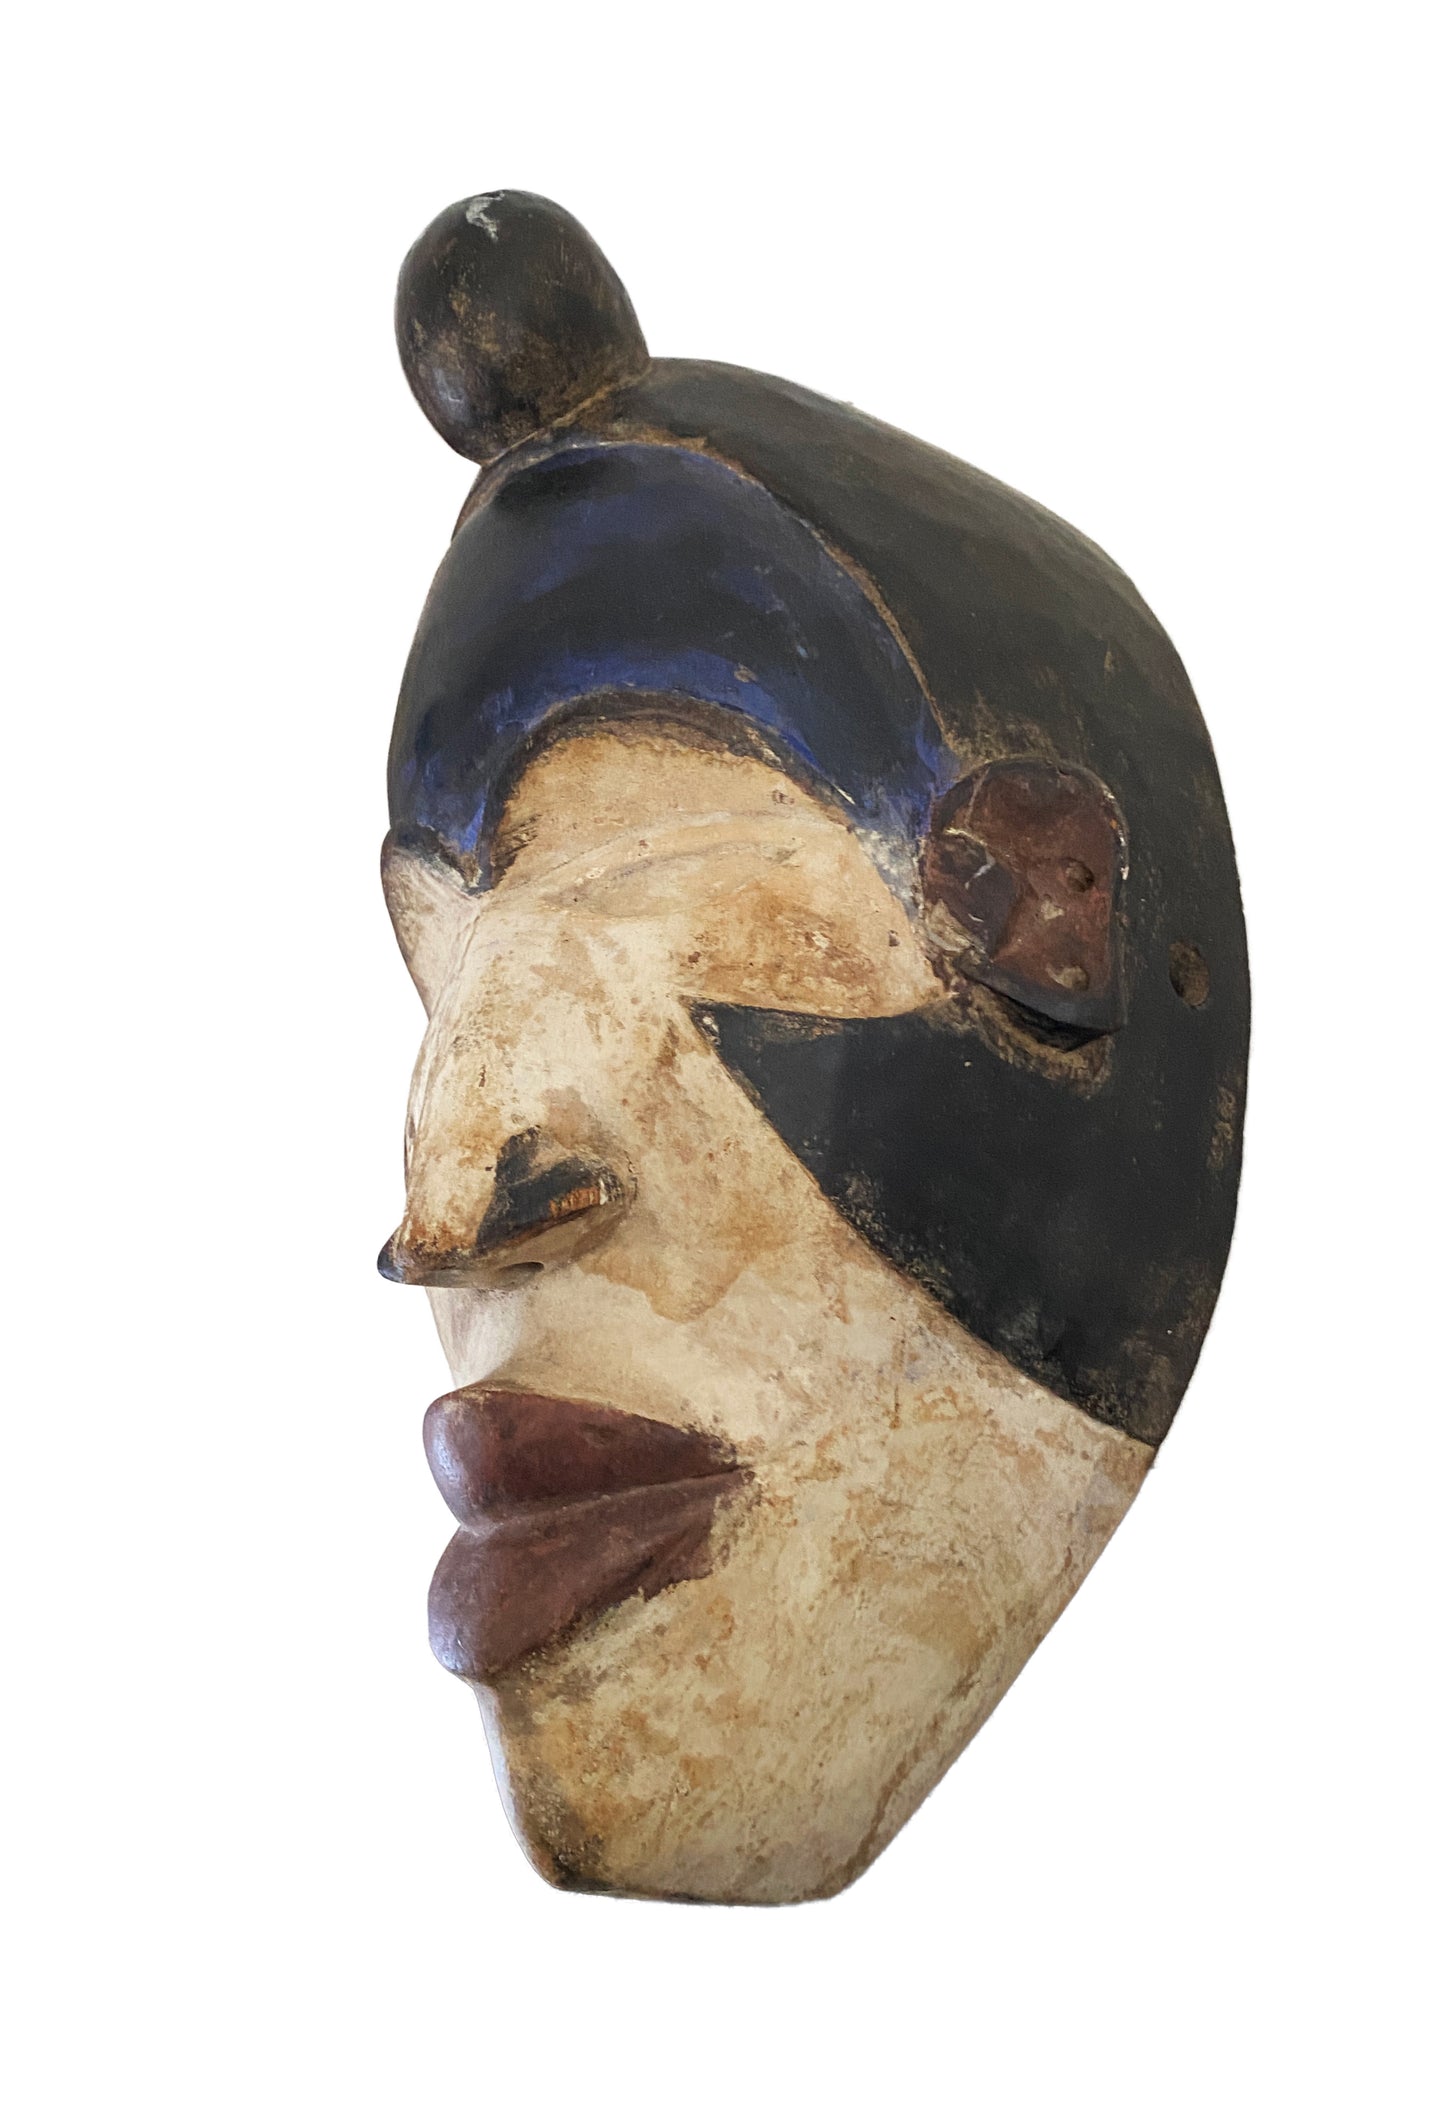 #3891 African Igbo Mask Nigeria 14.5 " H